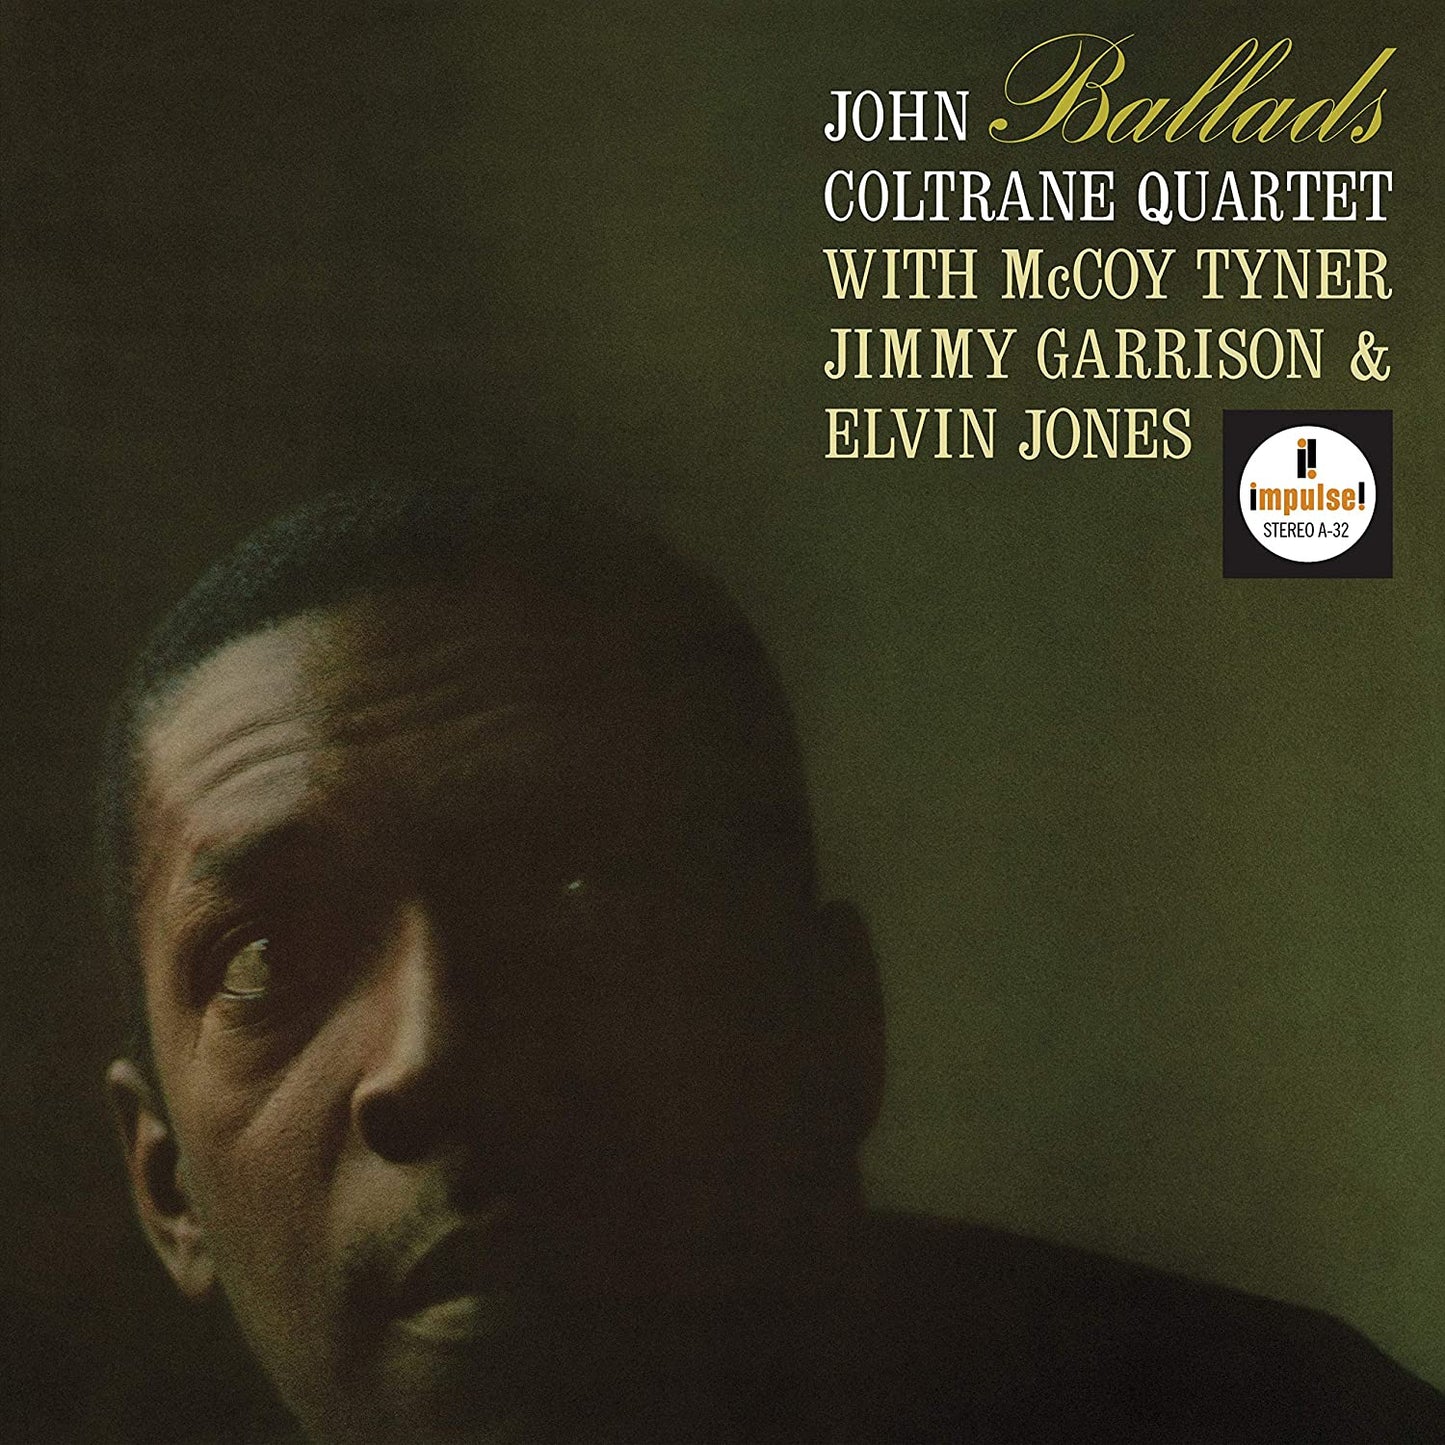 Coltrane, John/Ballads (Verve Acoustic Sounds) [LP]